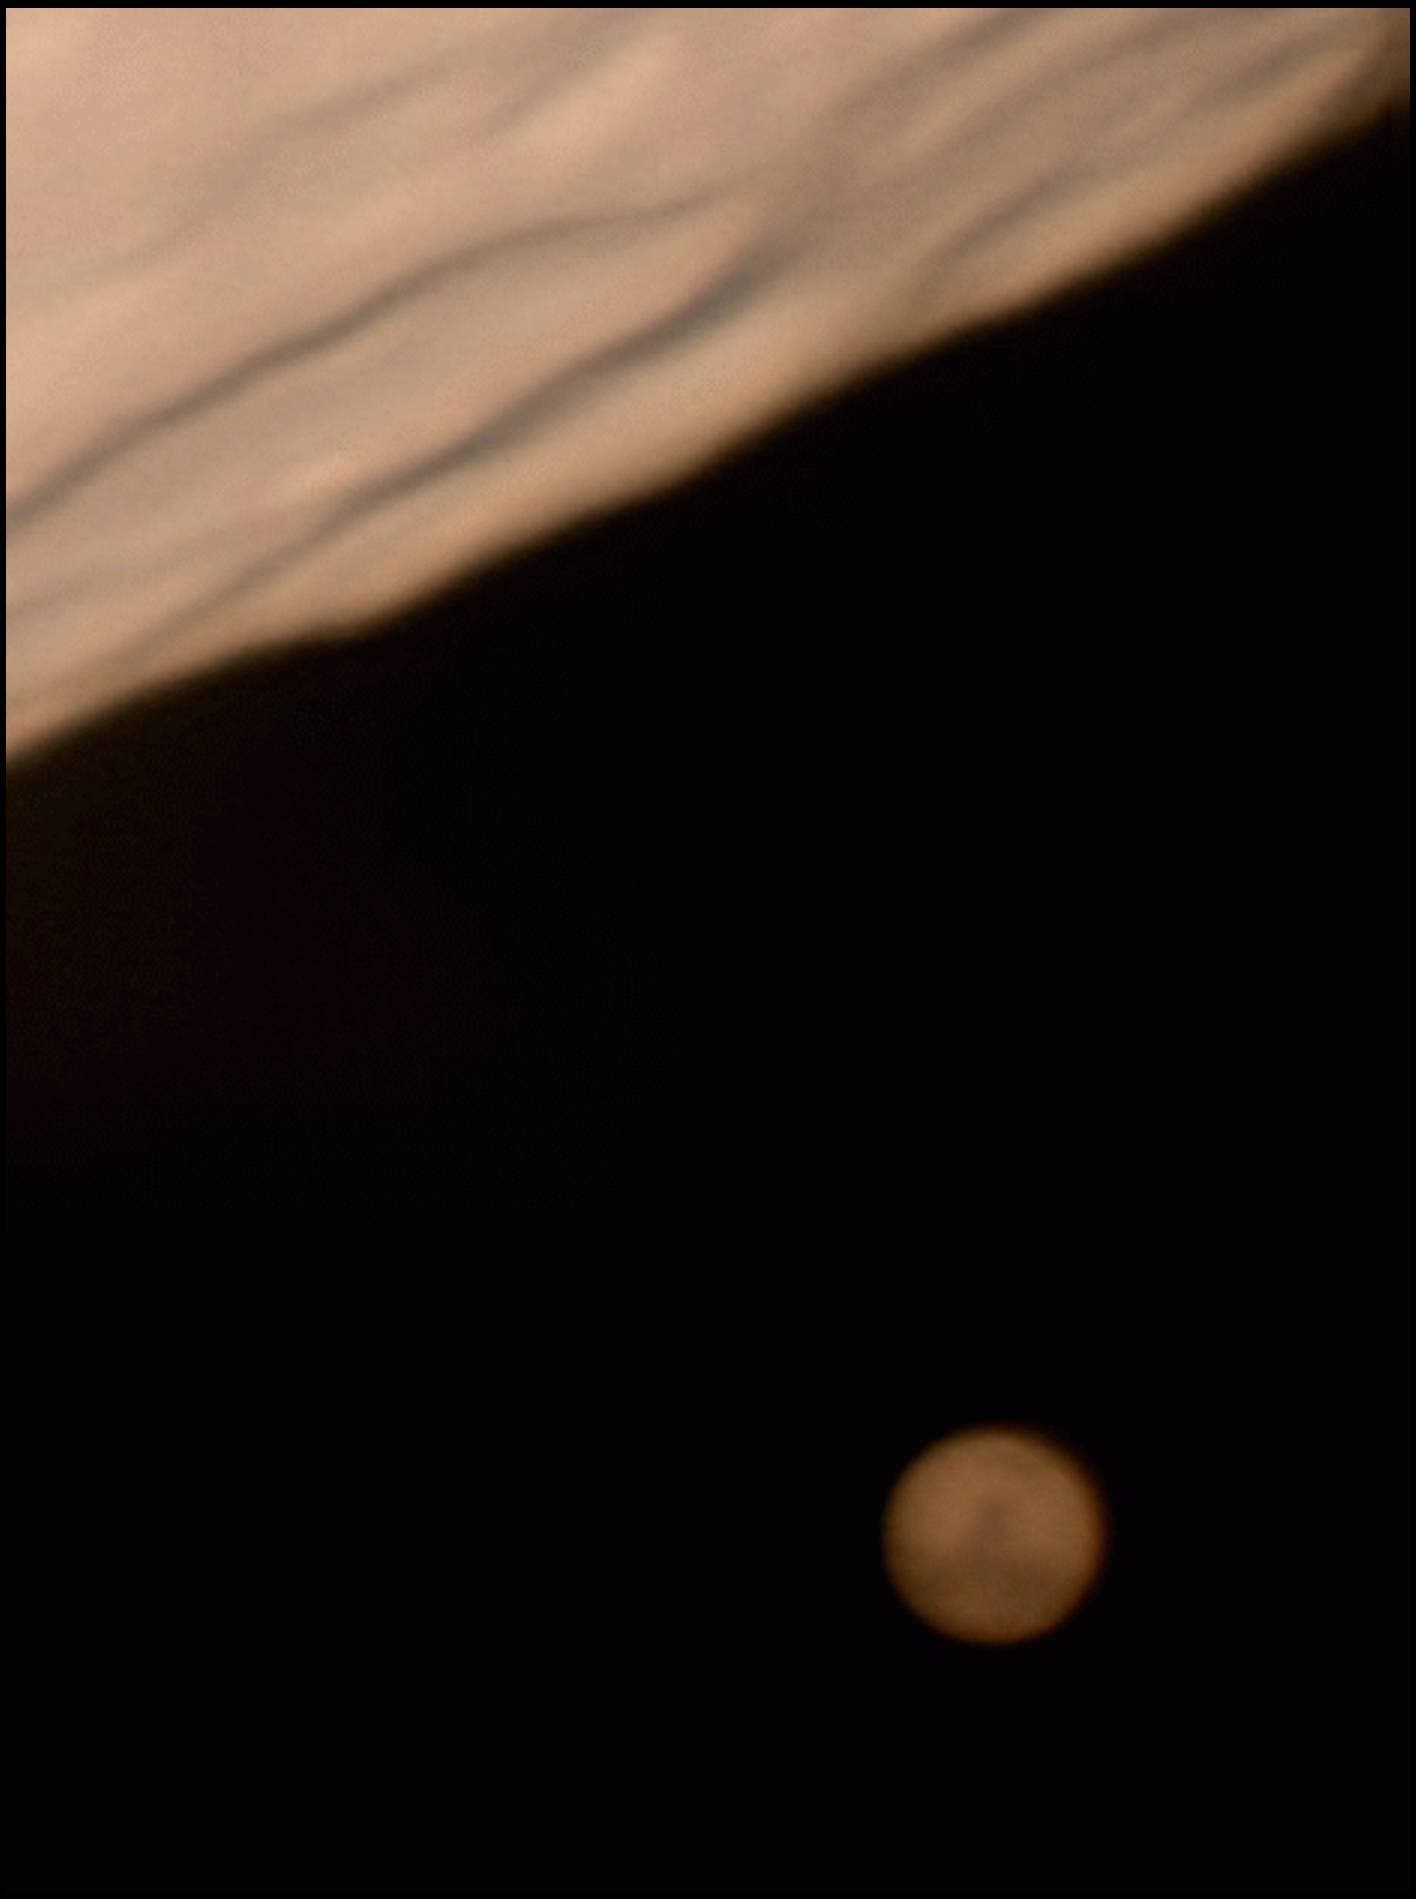 Enge Begegnung von Mond und Mars am 24.12.2007